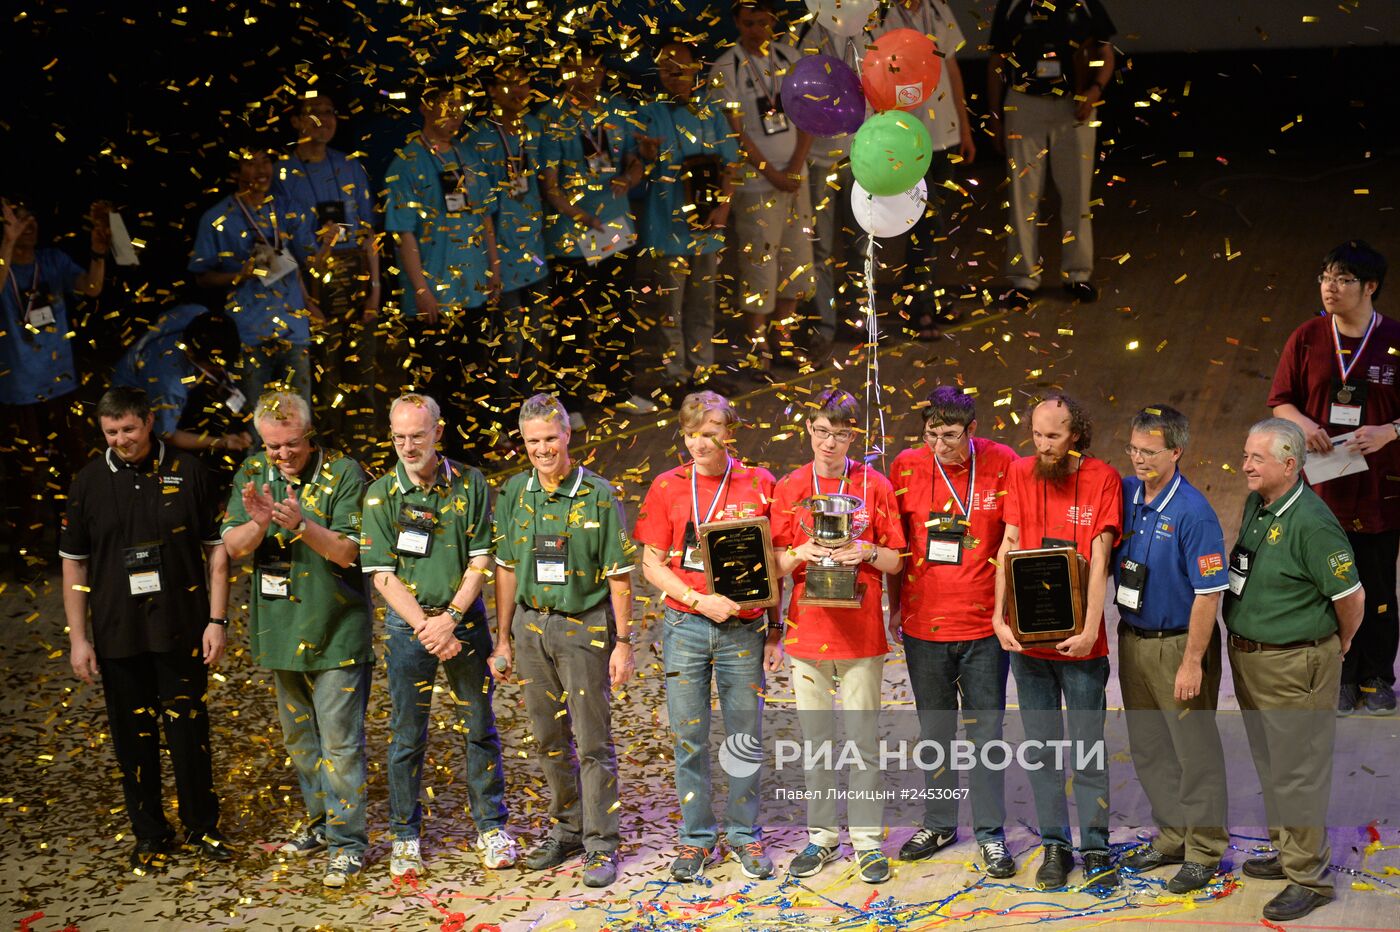 Финал Чемпионата мира по программированию в Екатеринбурге